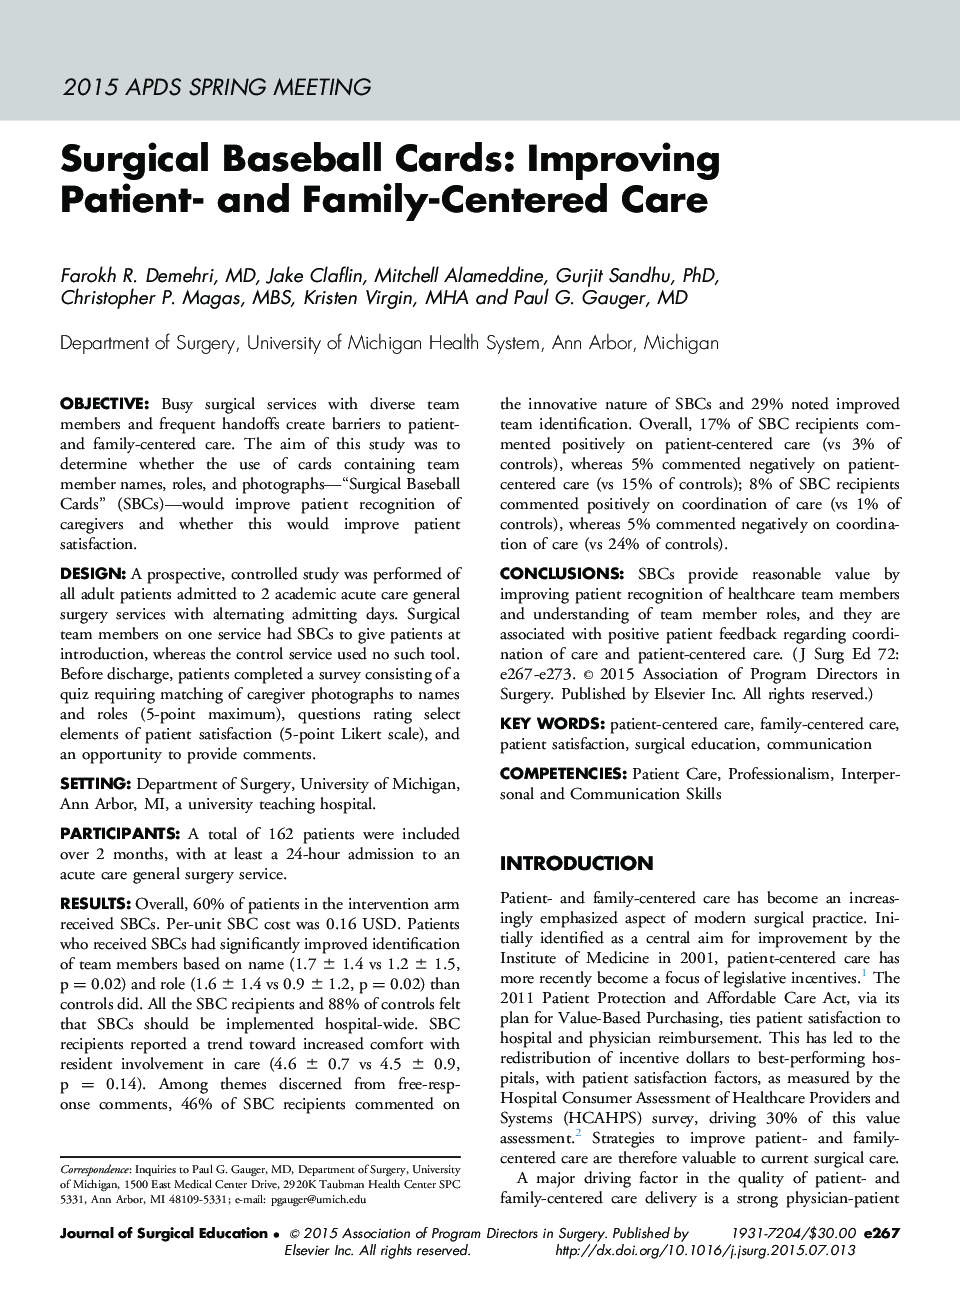 کارت های بیس بال جراحی: بهبود مراقبت از بیماران و خانواده 